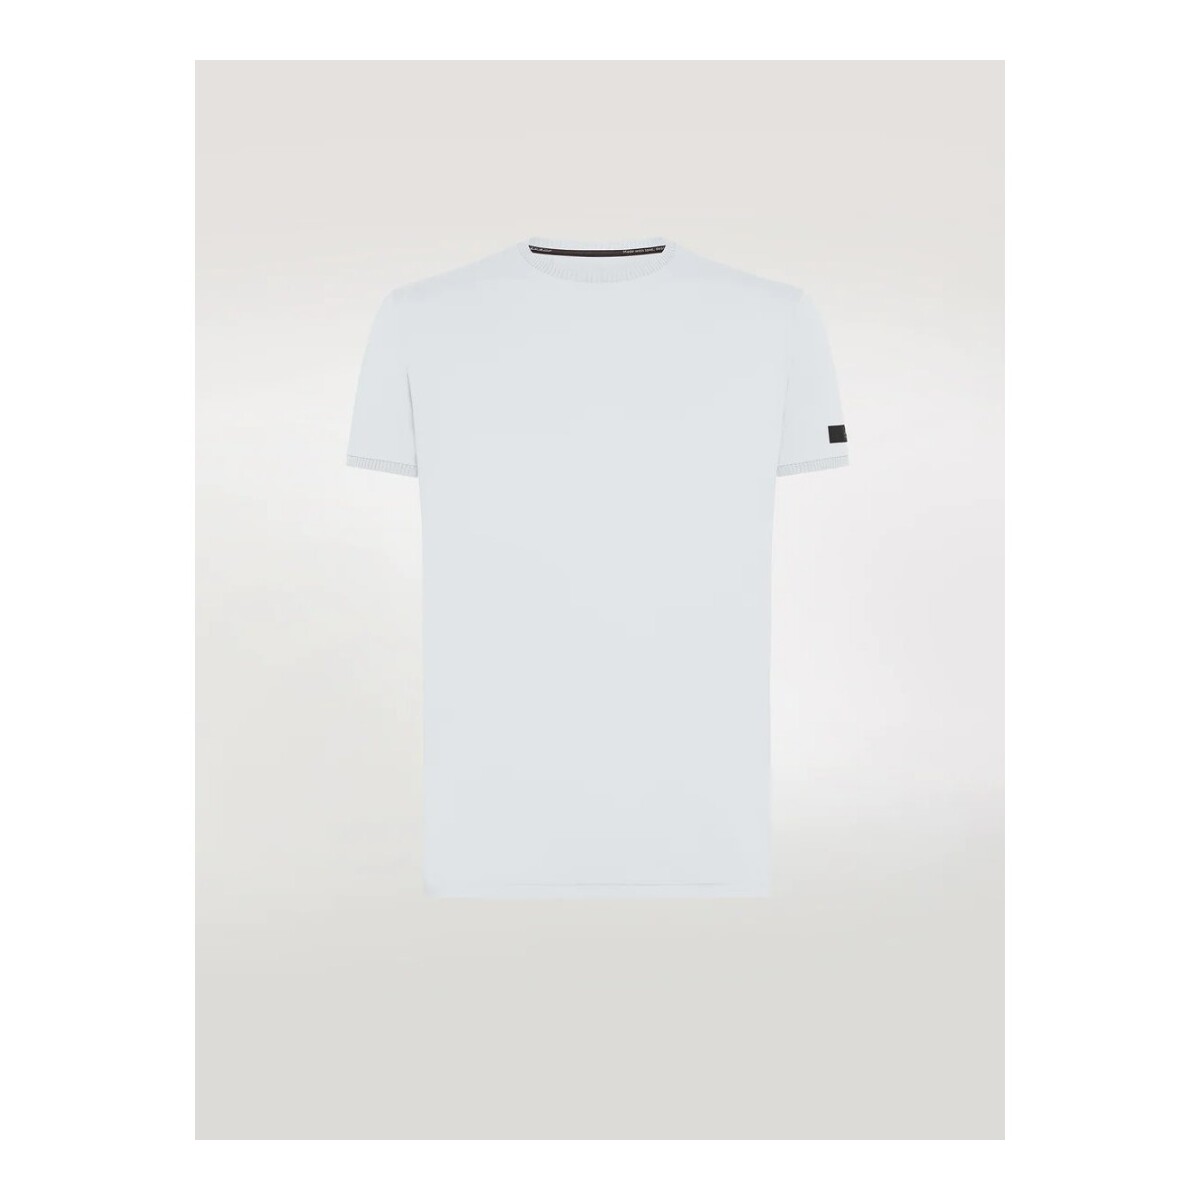 Kleidung Herren T-Shirts & Poloshirts Rrd - Roberto Ricci Designs S24209 Weiss